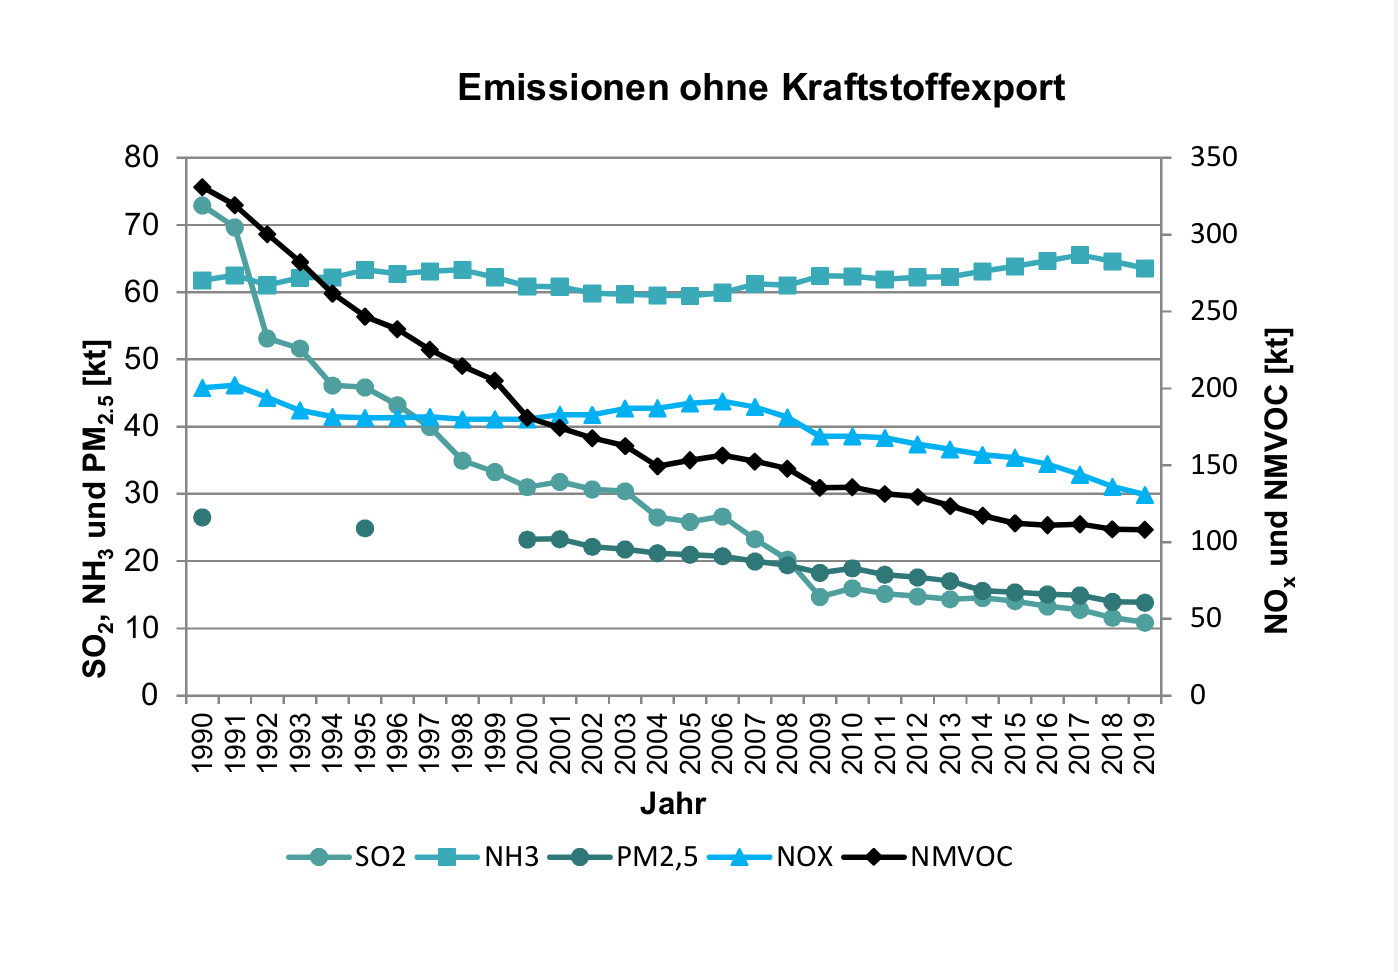 Grafik von SO2, NOx, NMVOC, NH3 und PM2.5-Emissionen ohne Kraftstoffexport